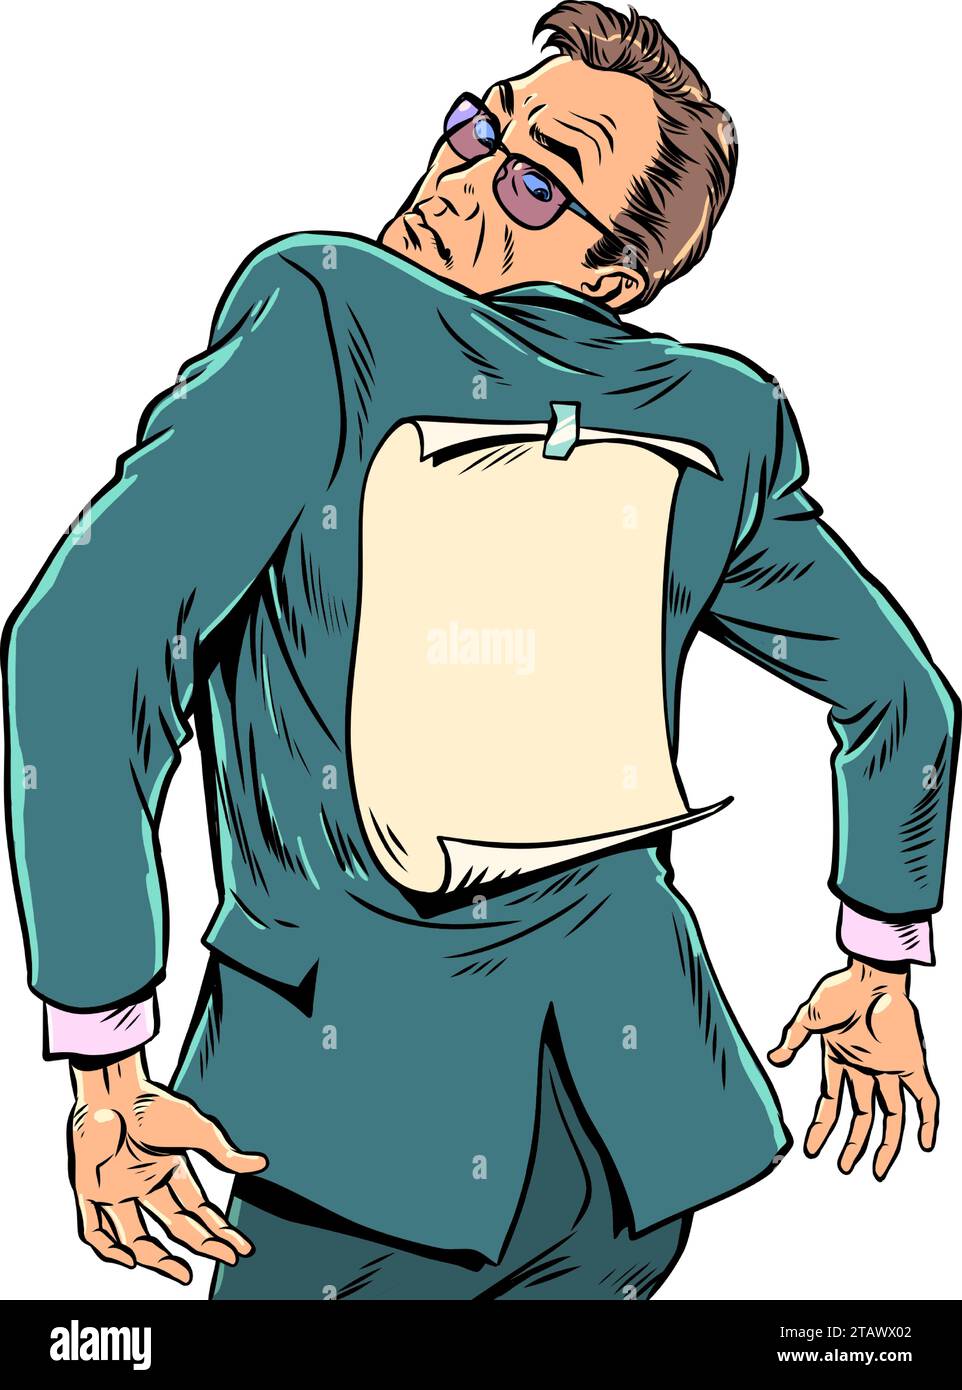 Ein von der Gesellschaft stigmatisierter Mitarbeiter. Ein Mann im Anzug schaut auf den Rücken, wo das Papier befestigt ist. Einander beschriften. Pop Art Retro Vektor Il Stock Vektor